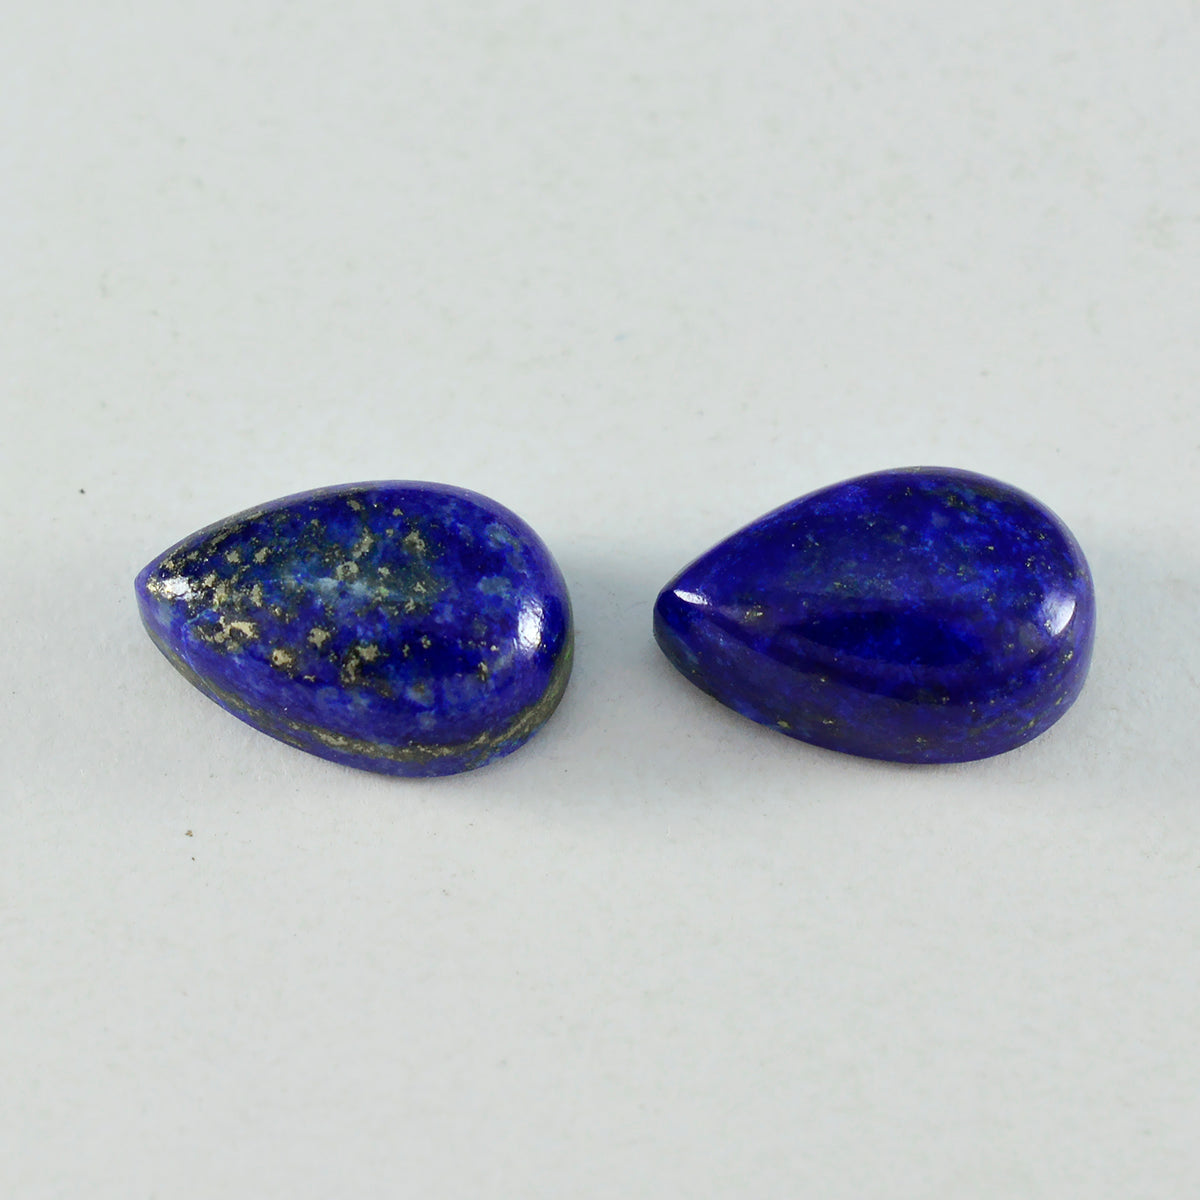 Riyogems 1 Stück blauer Lapislazuli-Cabochon, 12 x 16 mm, Birnenform, attraktive Qualitätsedelsteine